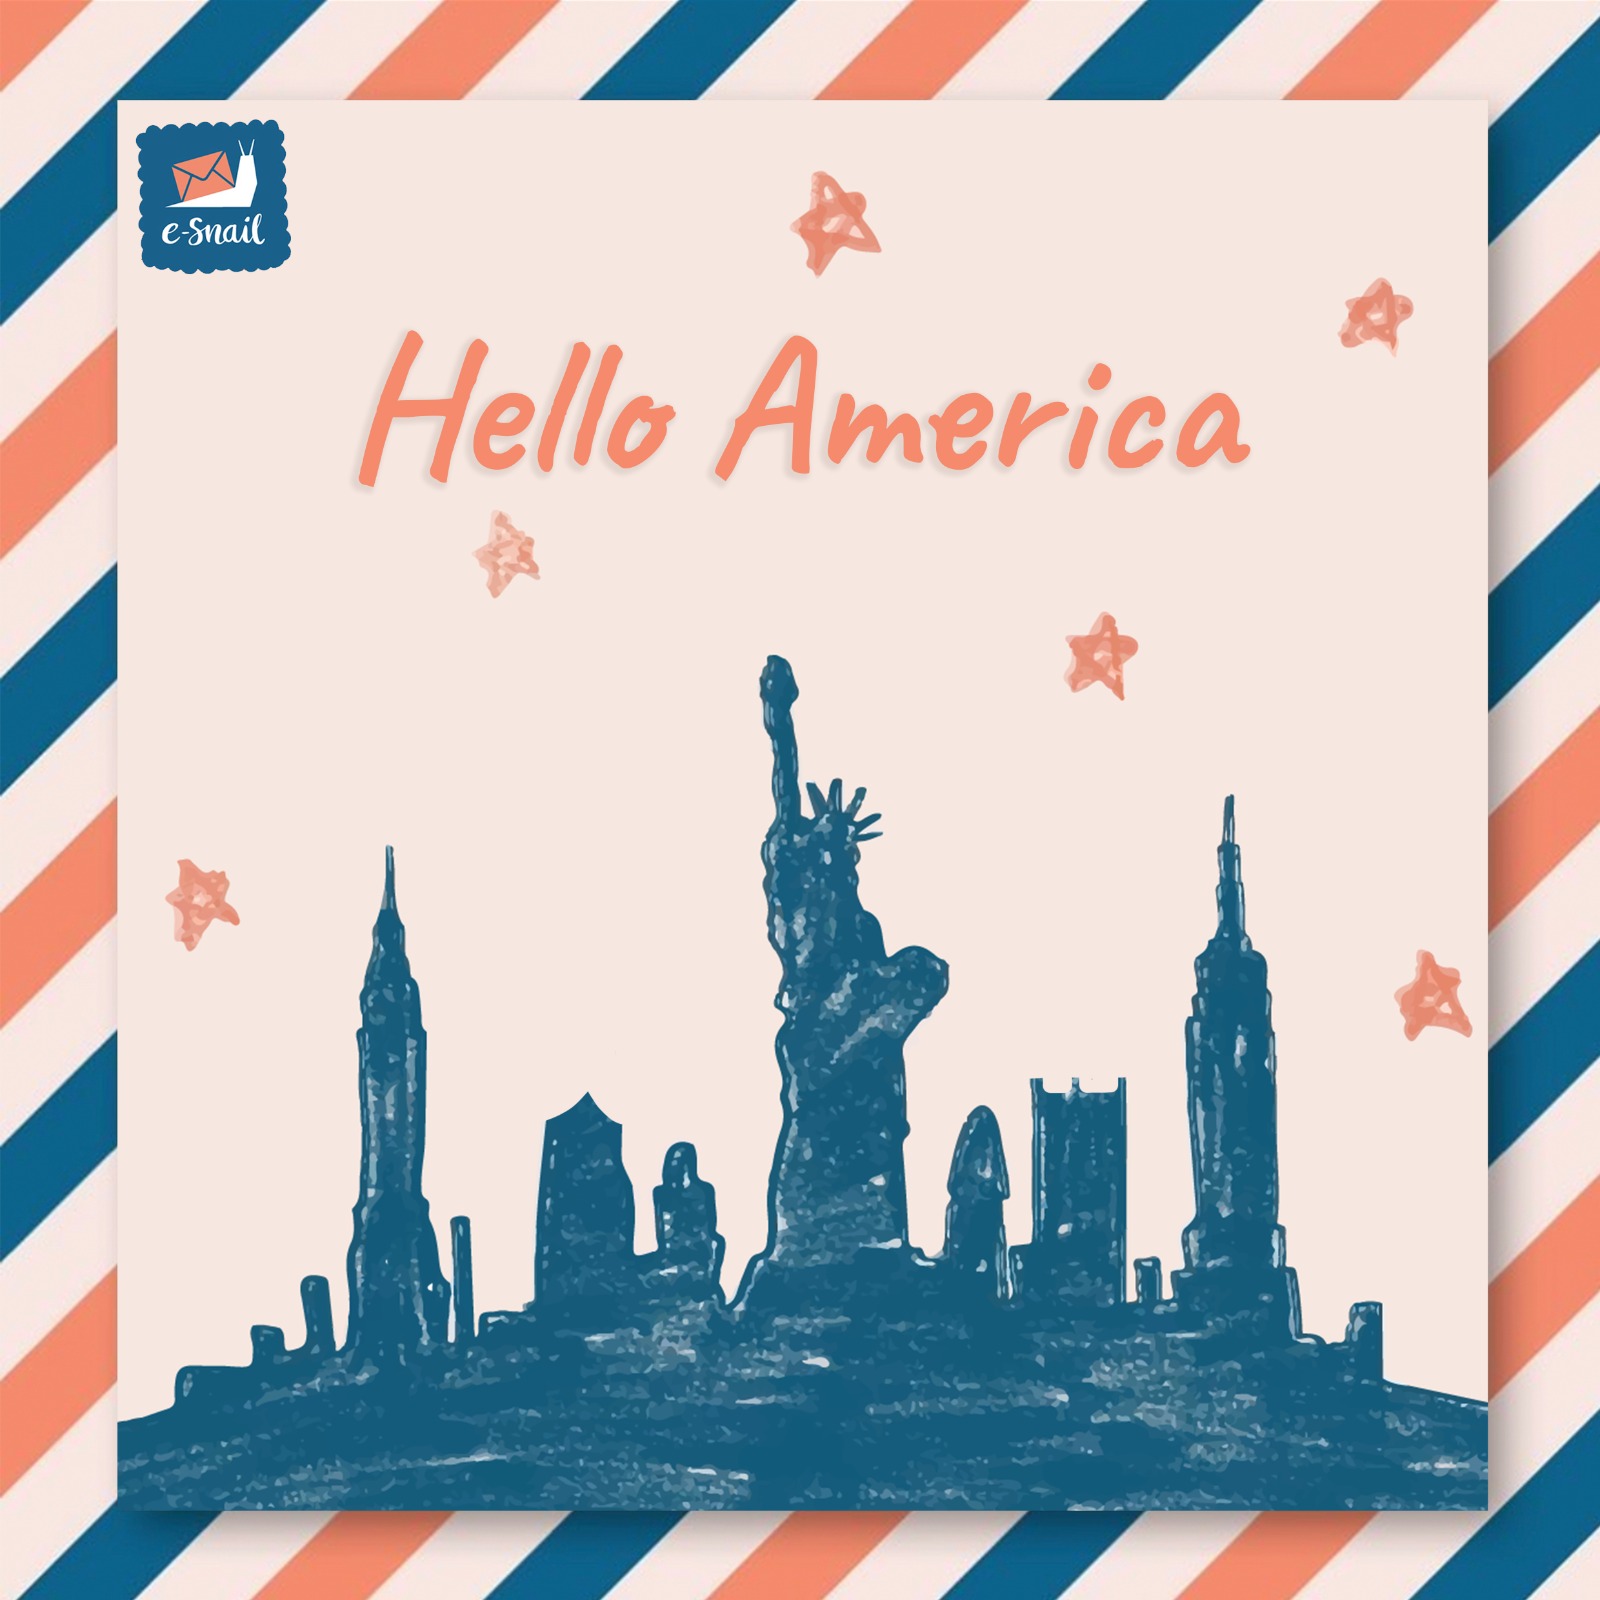 Hello America!